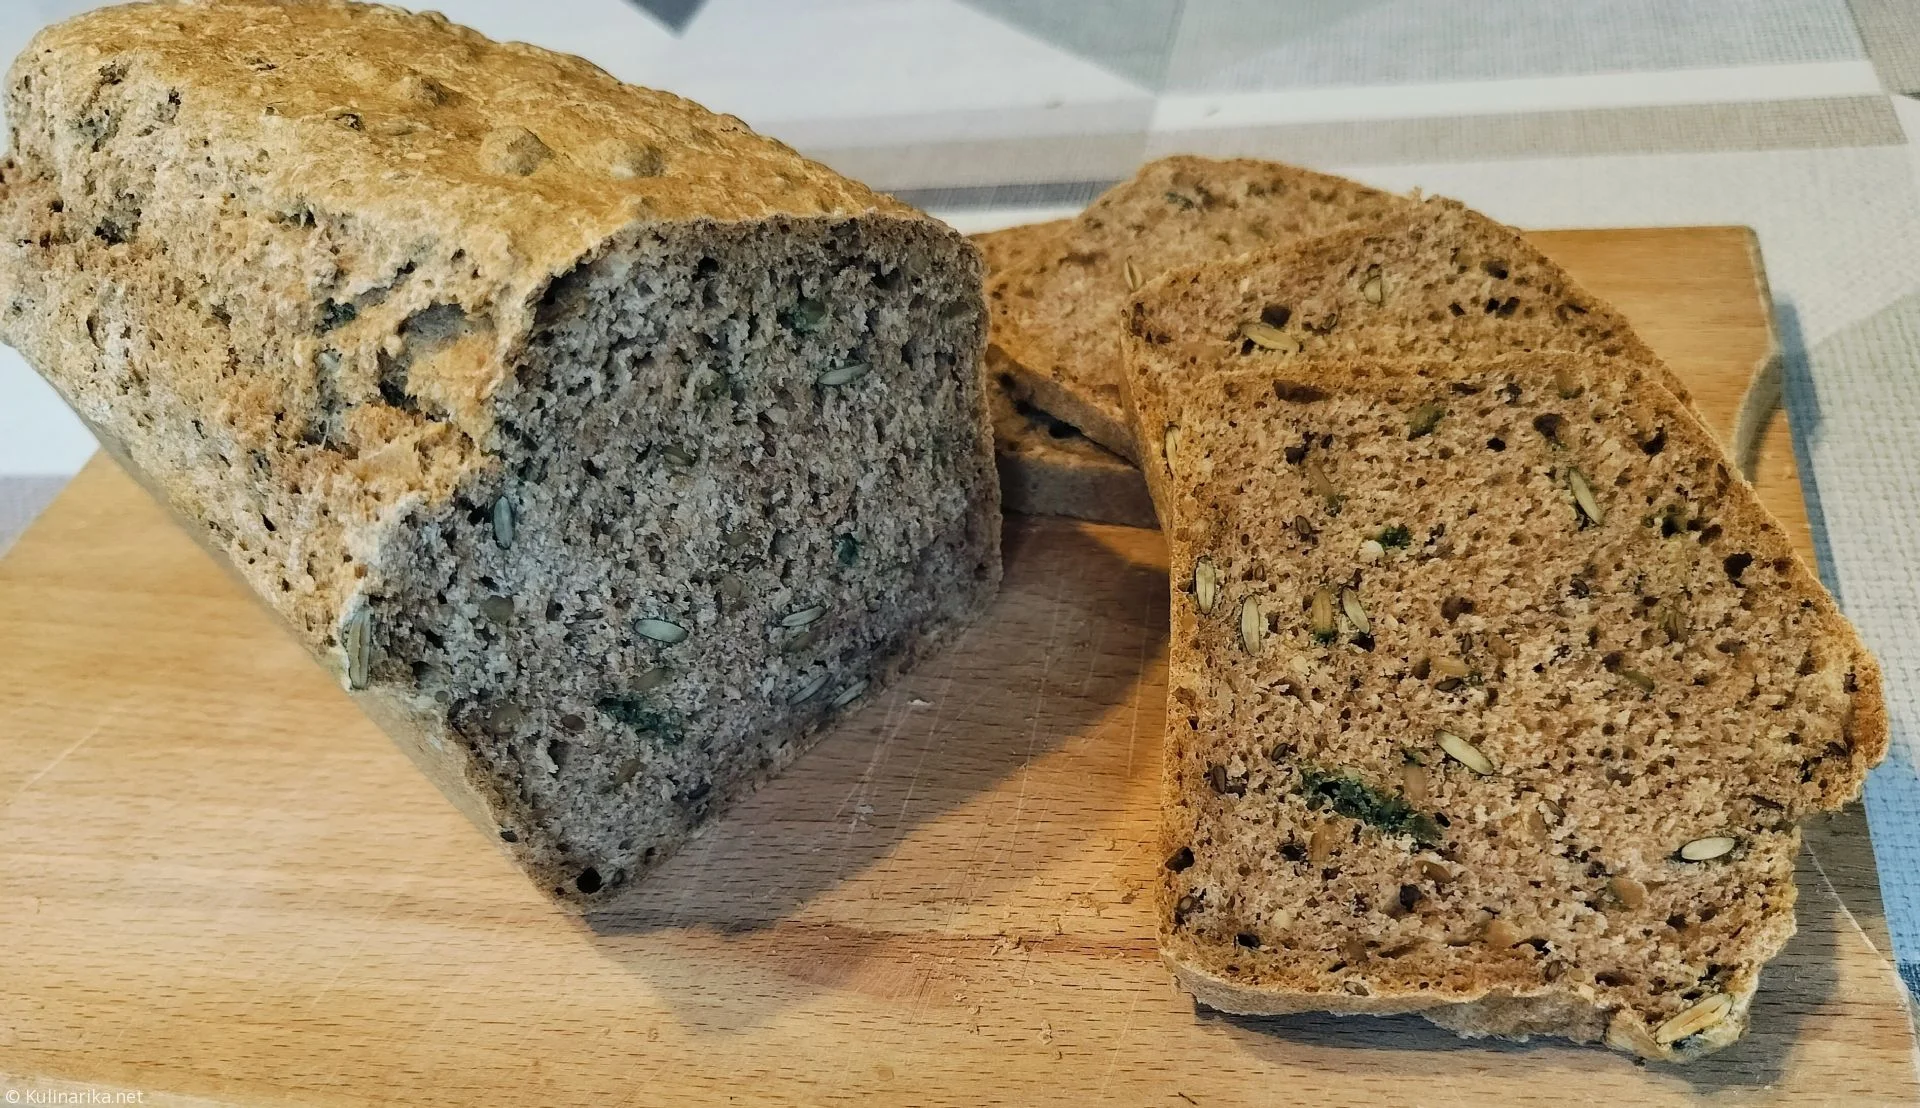 Pirin kruh brez kvasa- okusna in zdrava alternativa klasičnemu kruhu (tudi ob težavah s kandido) Vir- Kulinarika